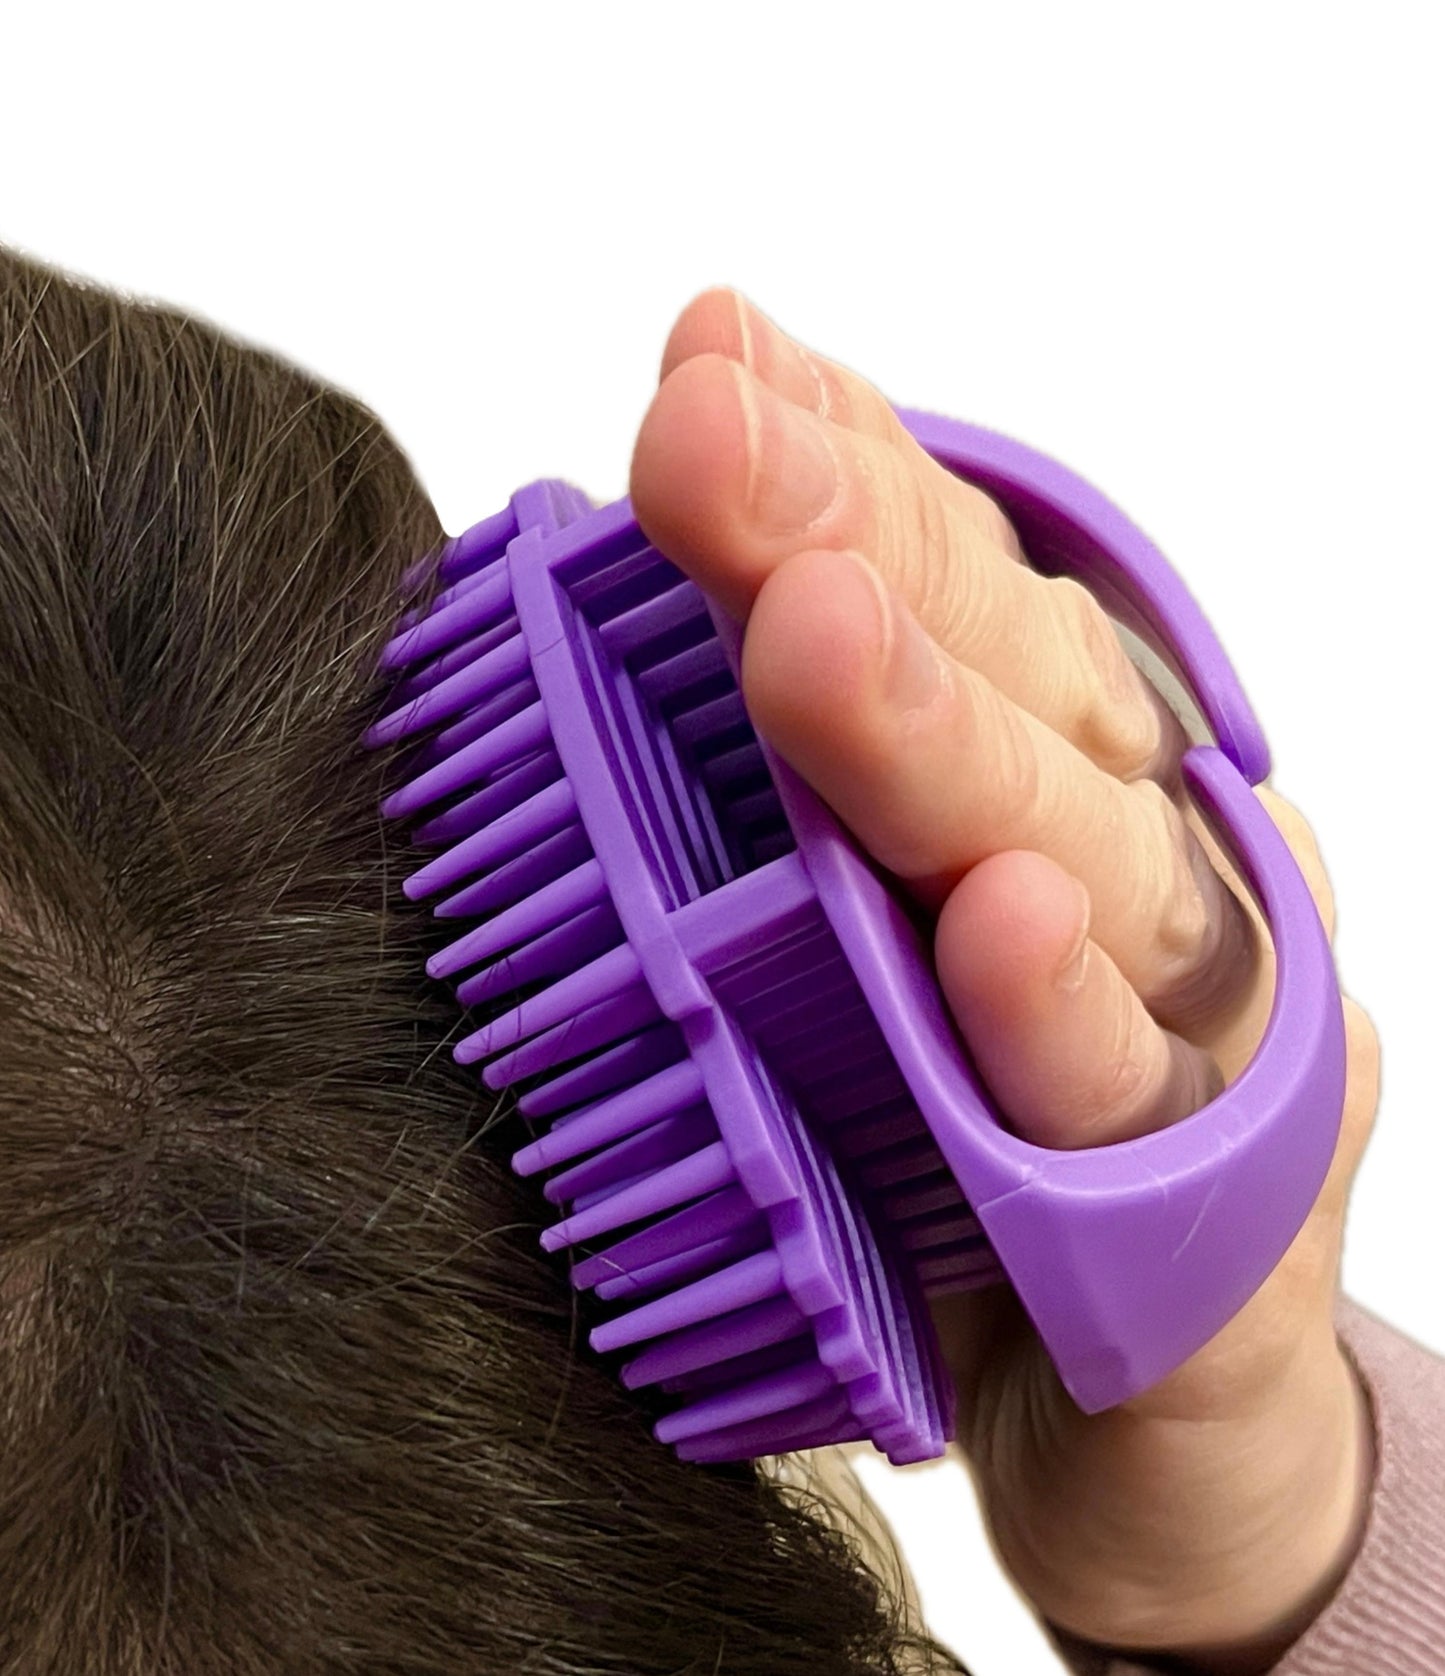 Scalp Hair Massager